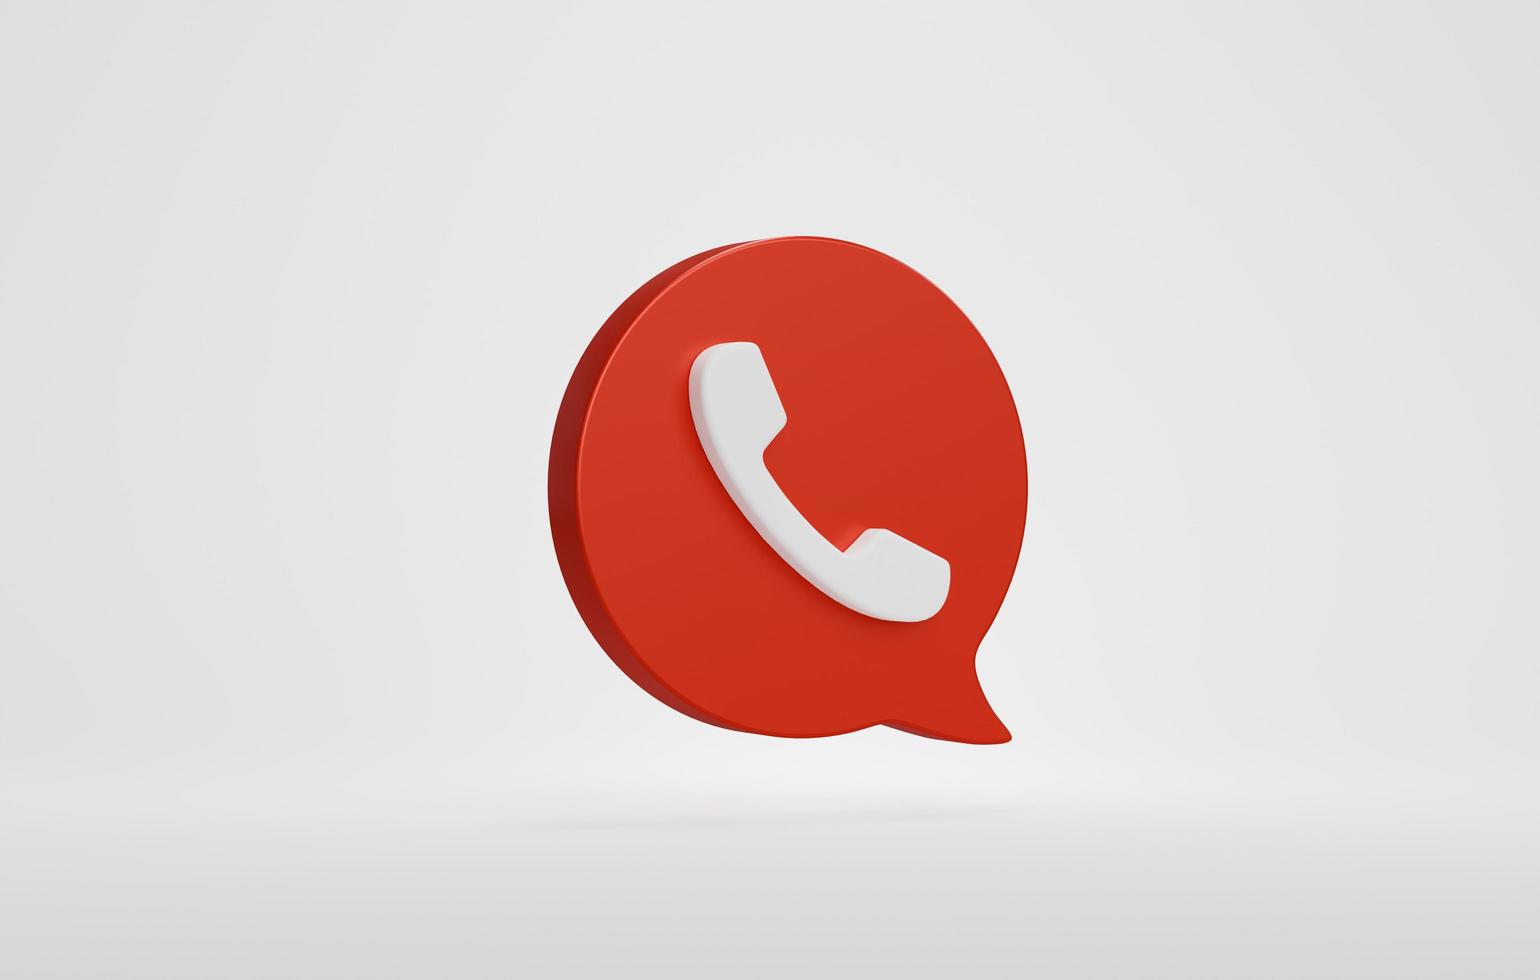 icono de teléfono rojo o símbolo móvil del sitio web de contacto aislado en fondo blanco, concepto de línea directa de soporte de servicio. representación 3d foto